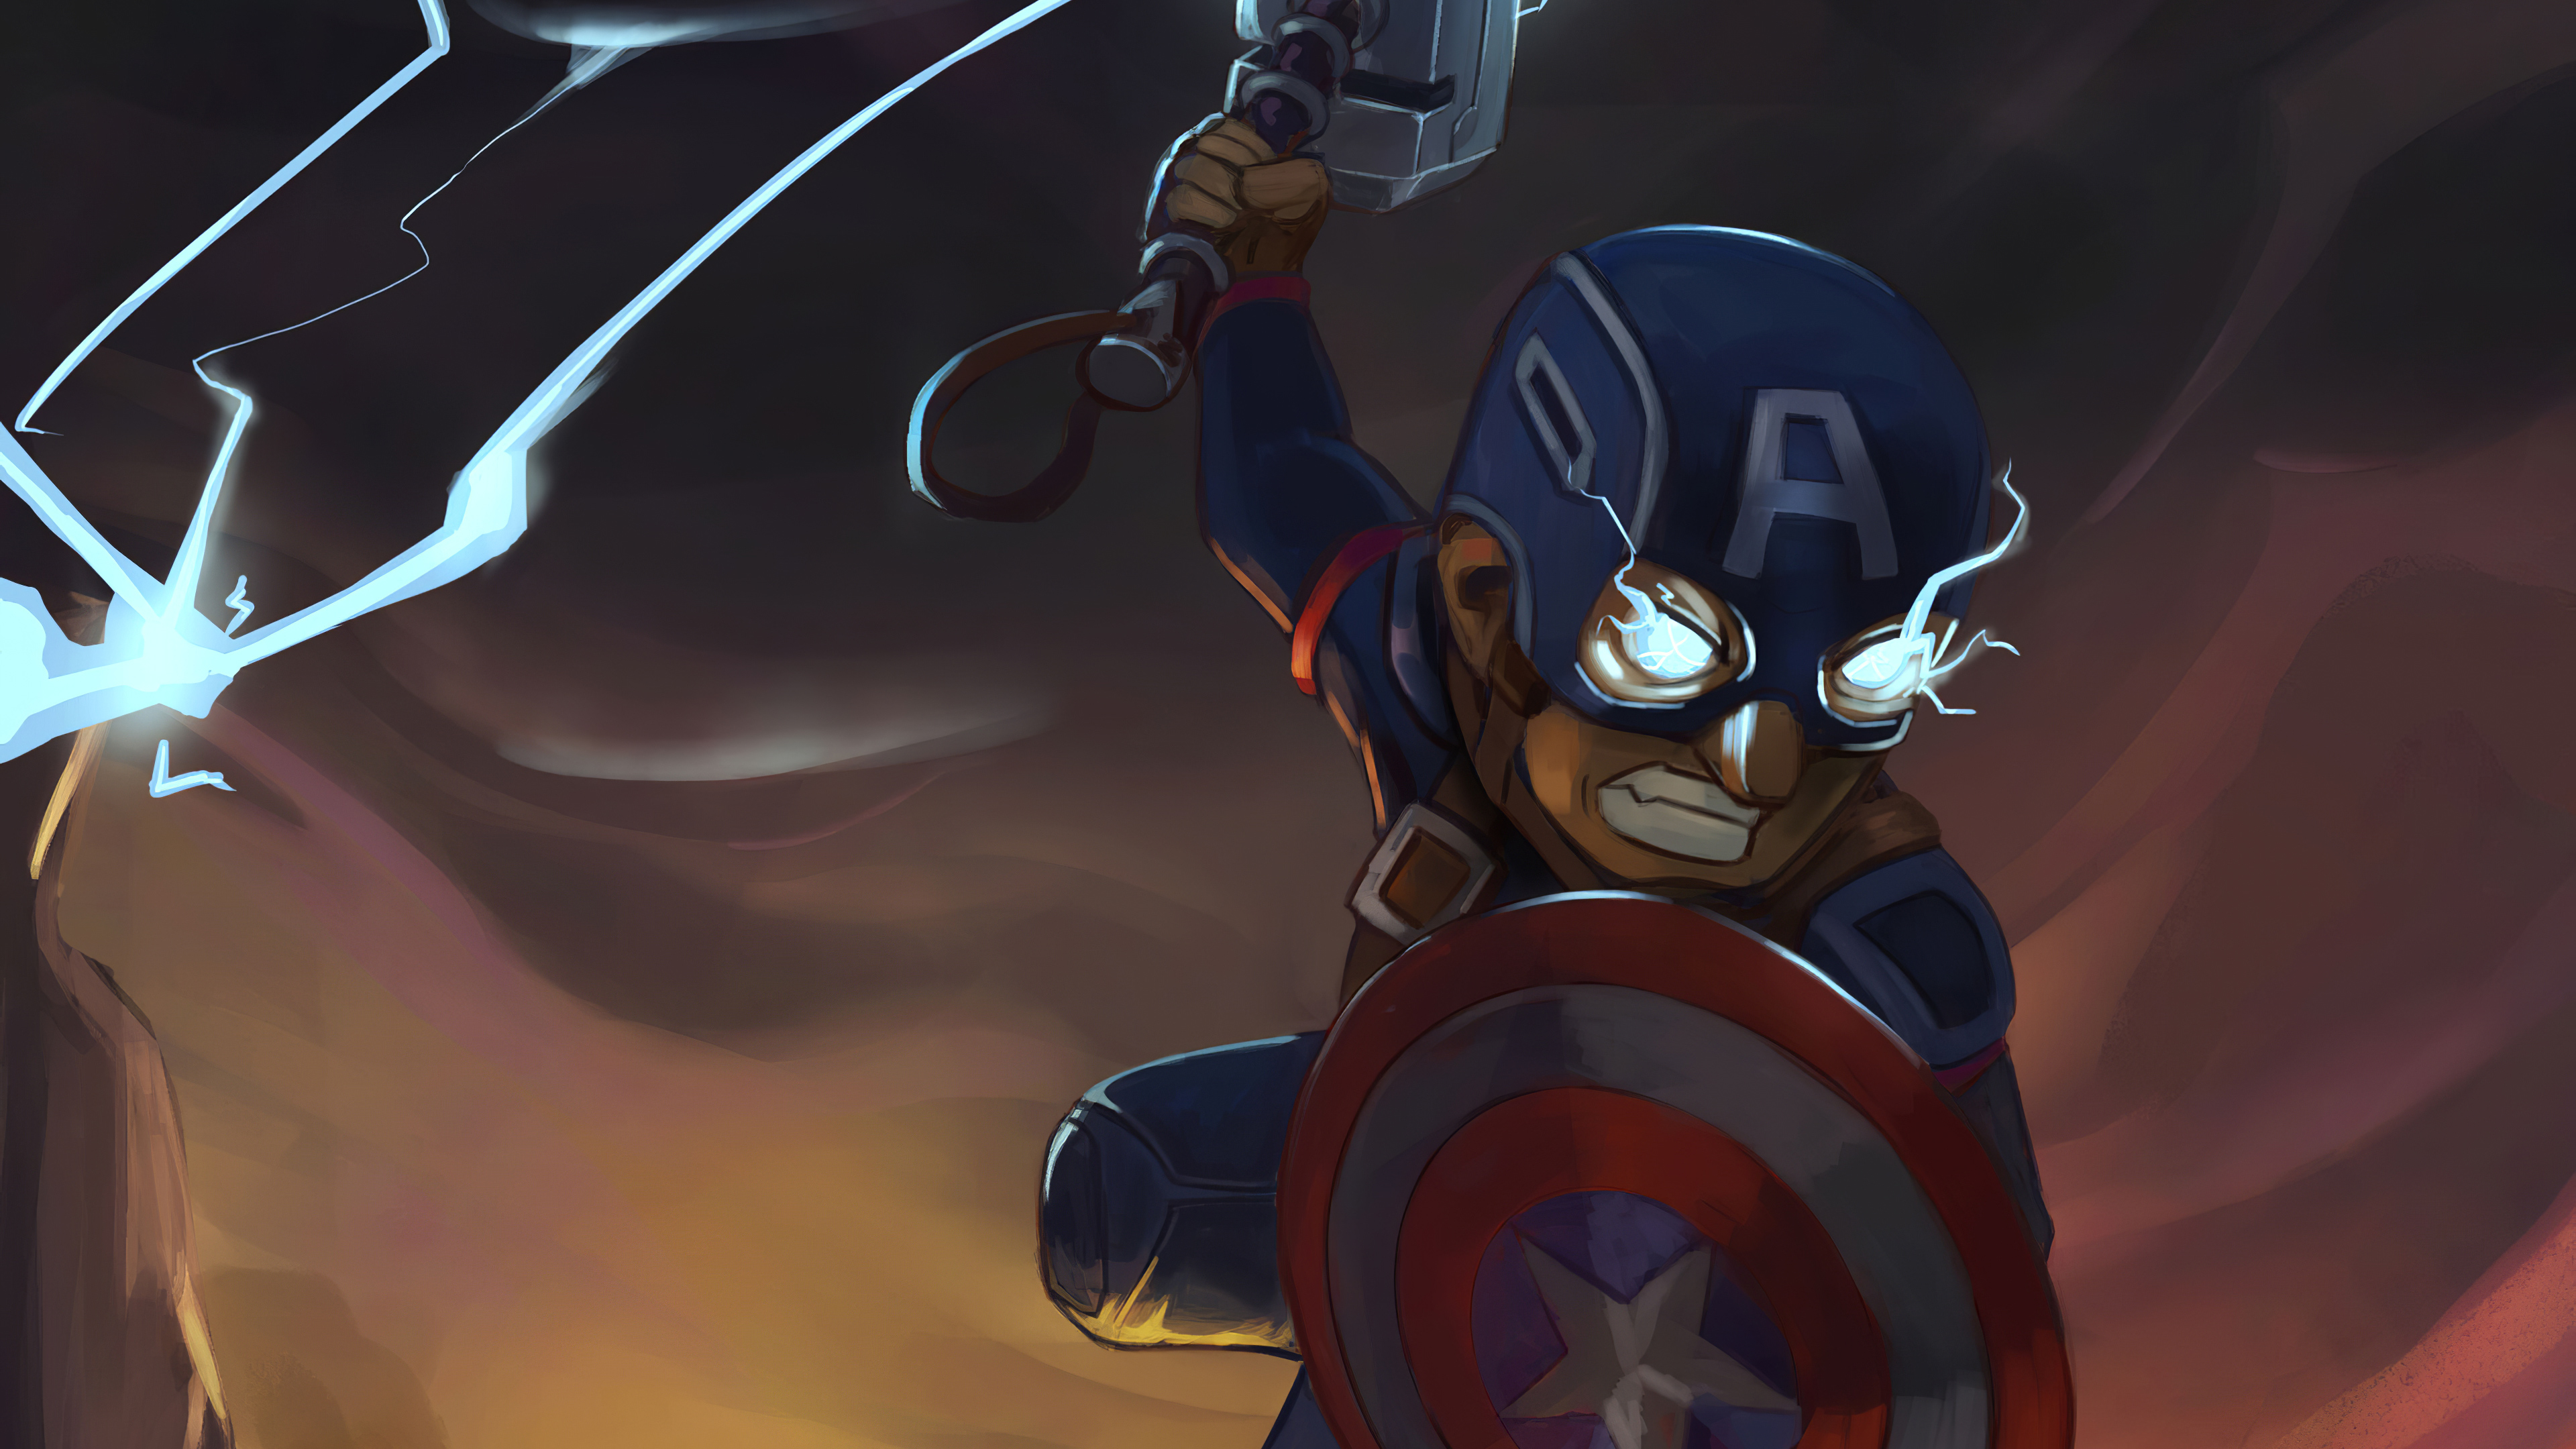 Captain America 4k Ultra HD Wallpaper by David Dan Tan